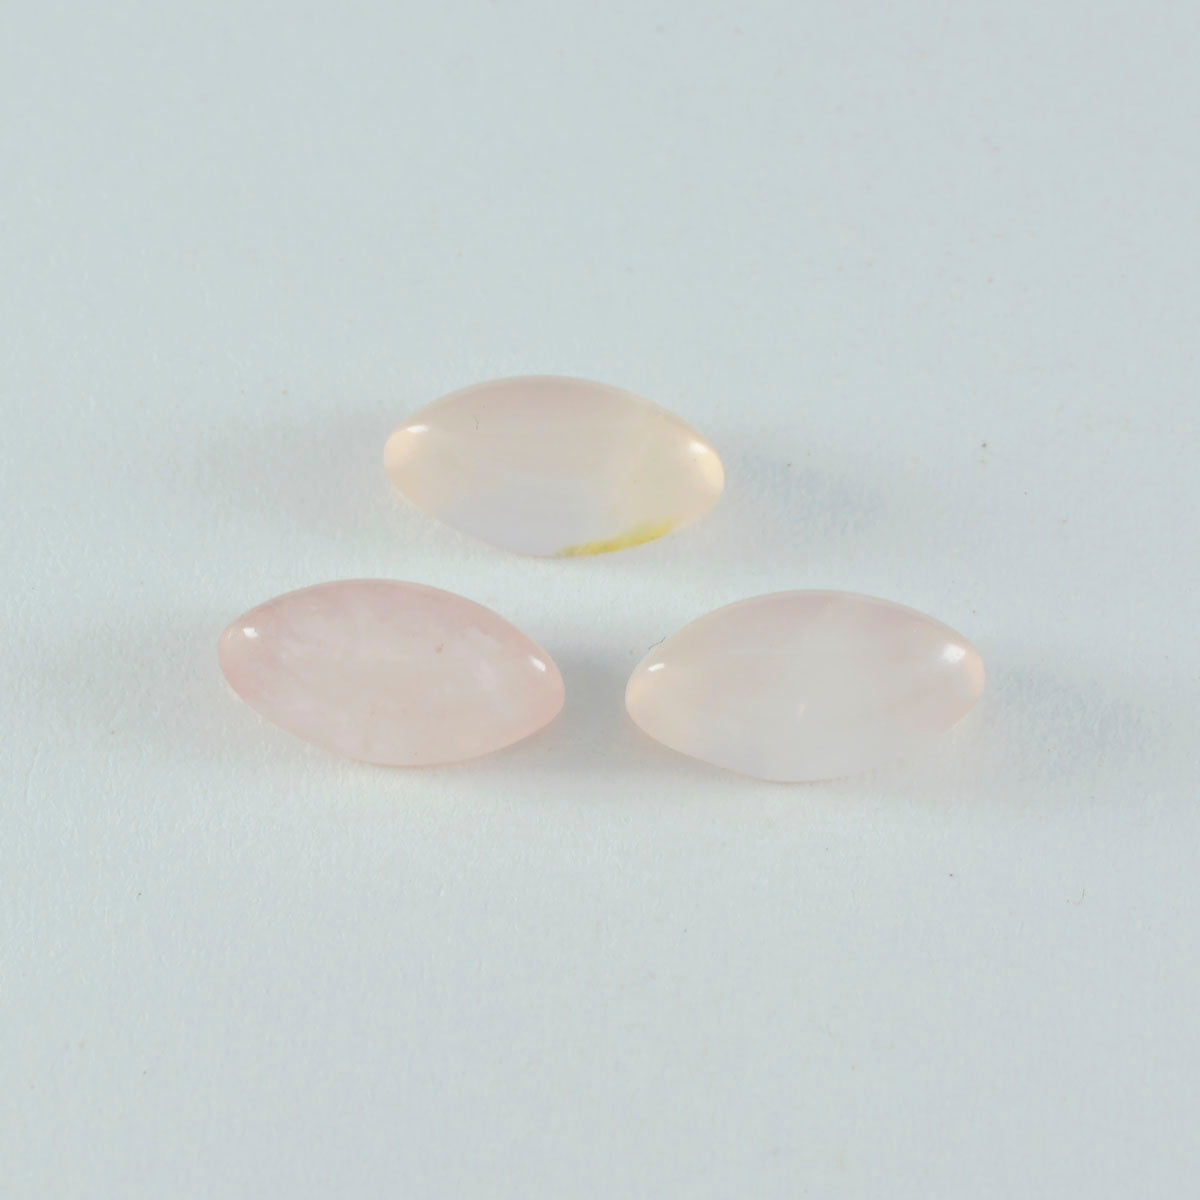 riyogems 1 шт. кабошон из розового кварца 9x18 мм в форме маркизы, красивый качественный свободный драгоценный камень